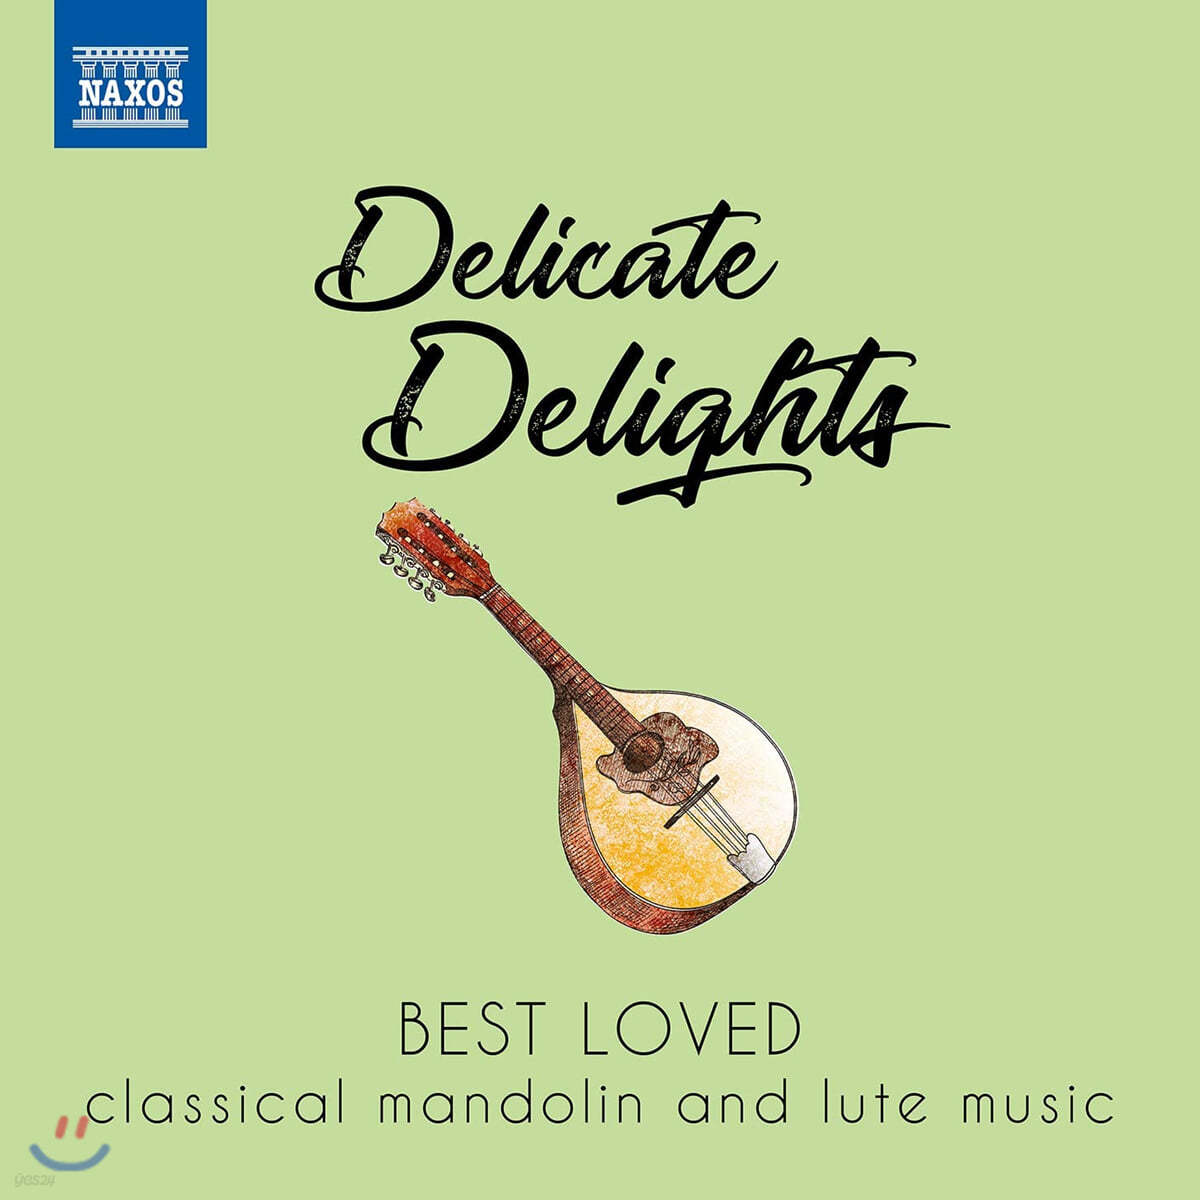 우리가 사랑하는 만돌린과 류트를 위한 작품들 (Delicate Delights -  Best Loved classical mandolin and lute music)